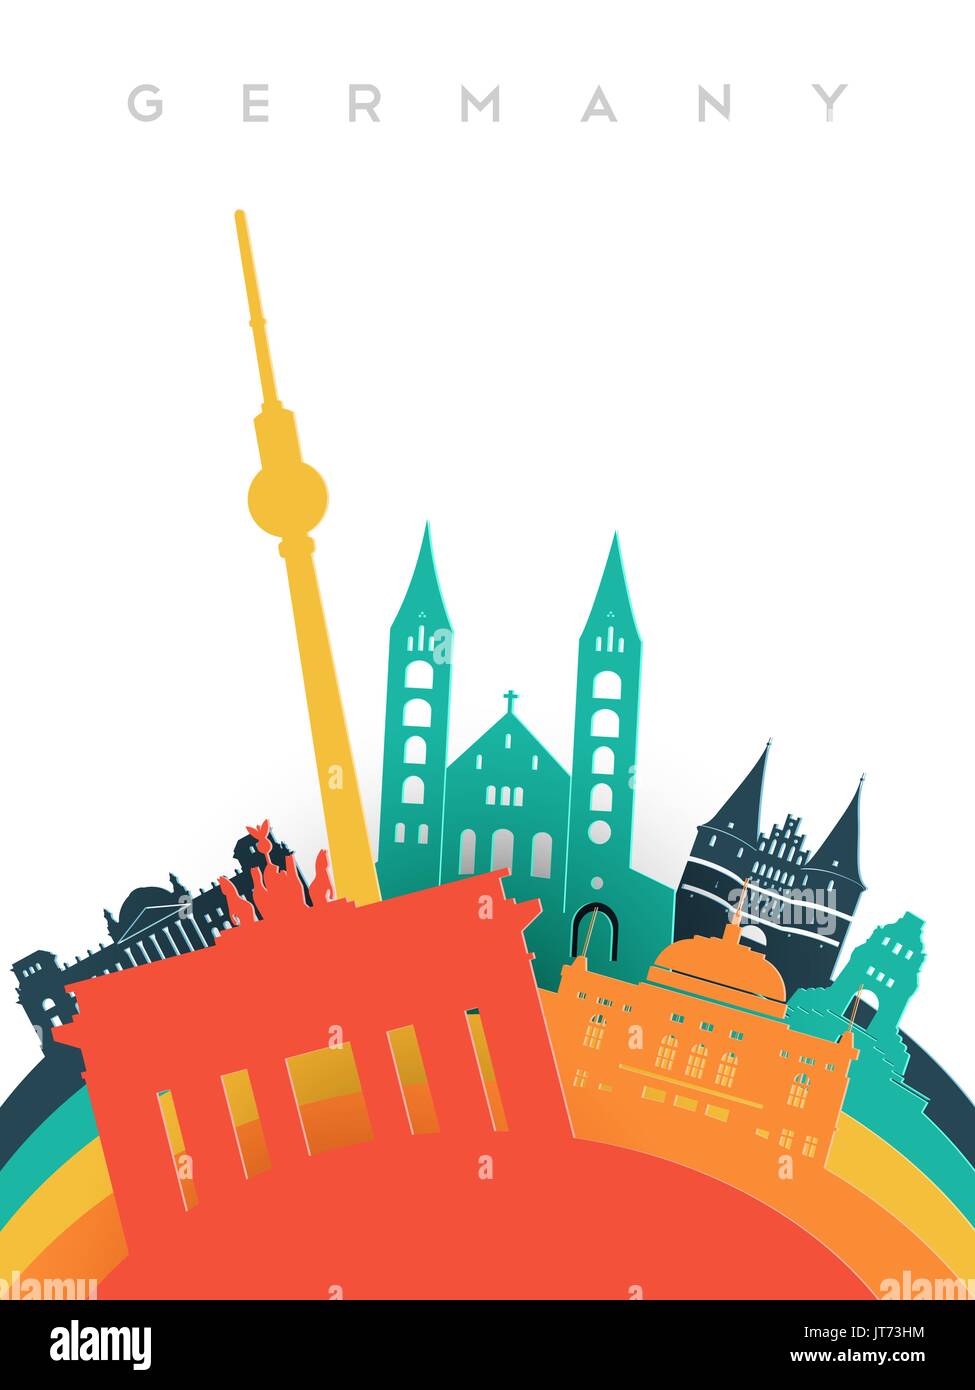 Alemania viajes ilustración en 3D estilo de corte de papel, el mundo alemán monumentos. Incluye torre de Berlín, la puerta de Brandenburgo, monumentos históricos. Vector EPS10. Ilustración del Vector